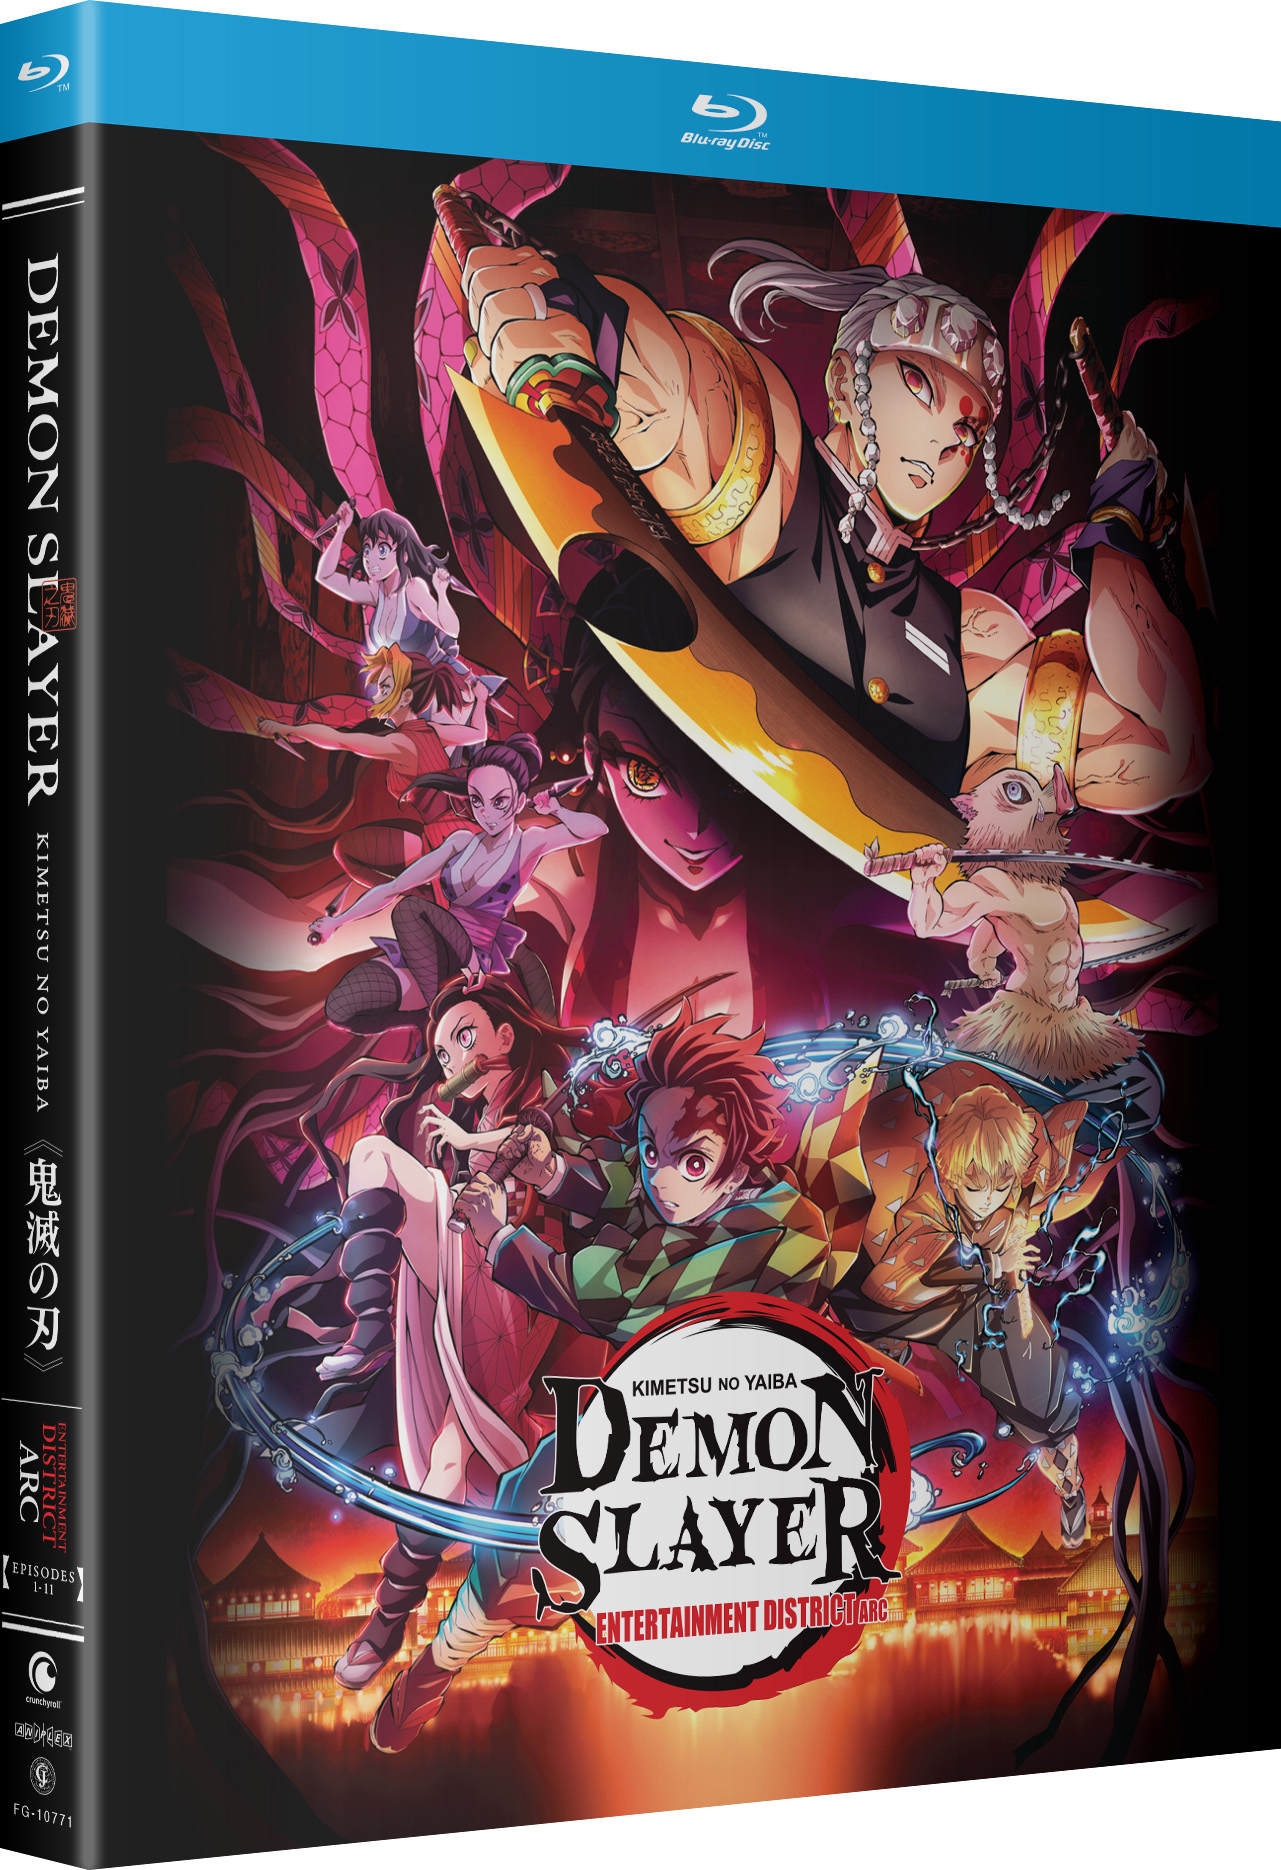 Demon Slayer: Kimetsu no Yaiba Season 1